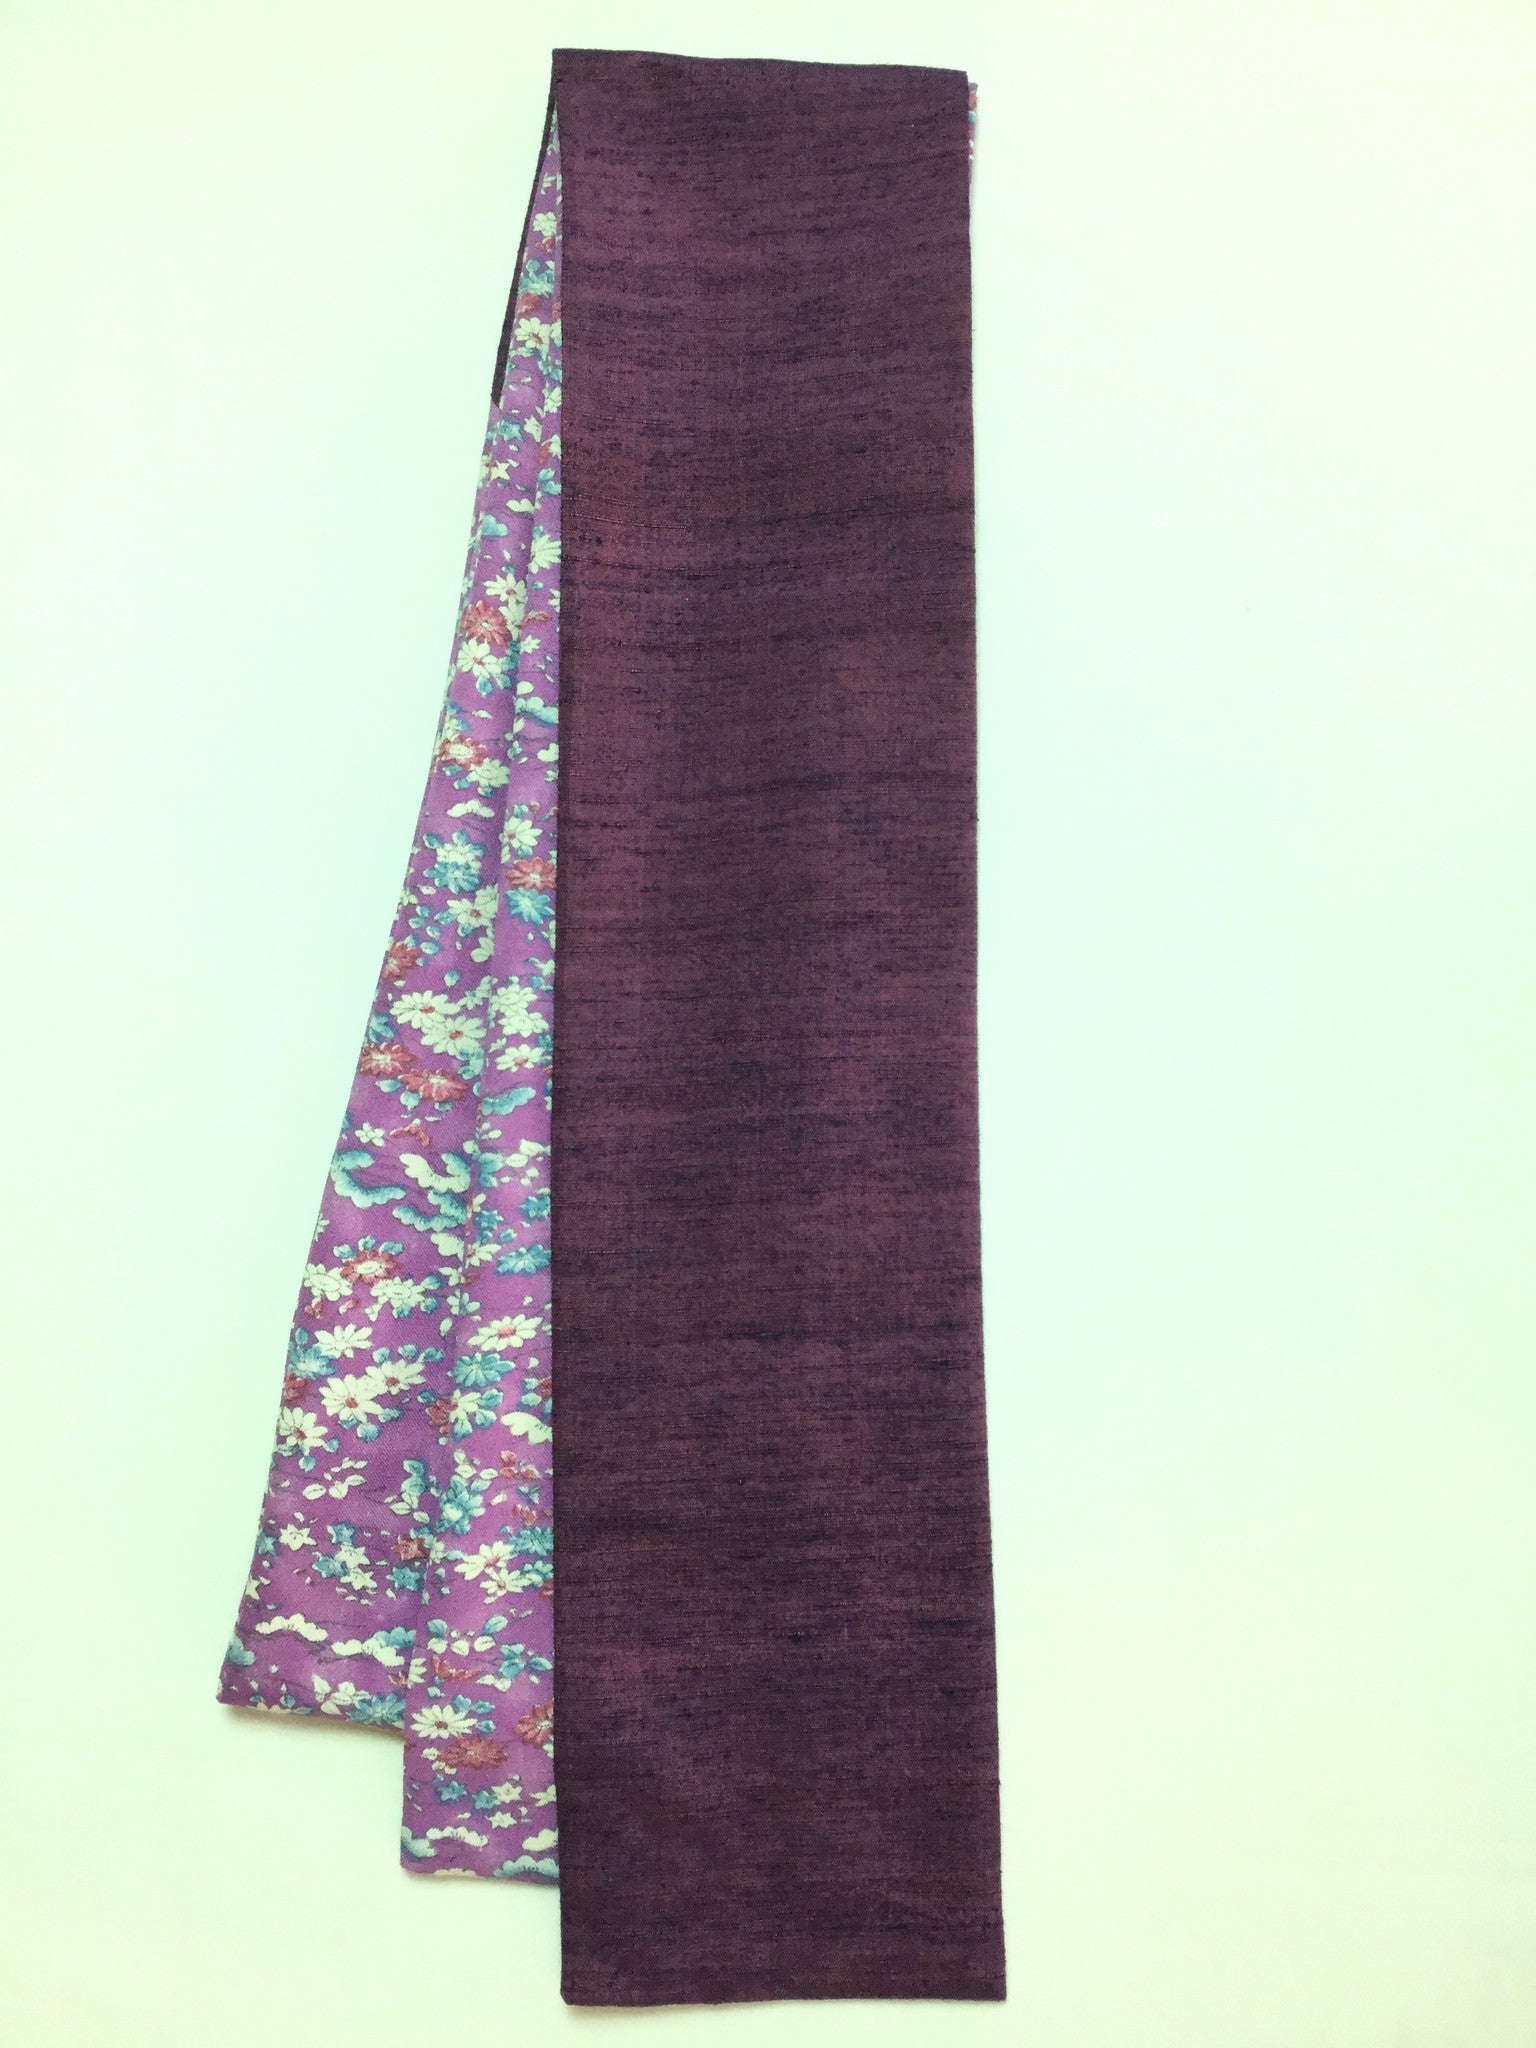 Straight Scarf Two Fabric Purple Design ストレートスカーフ 二色使い 紫小花柄 Megumi Project